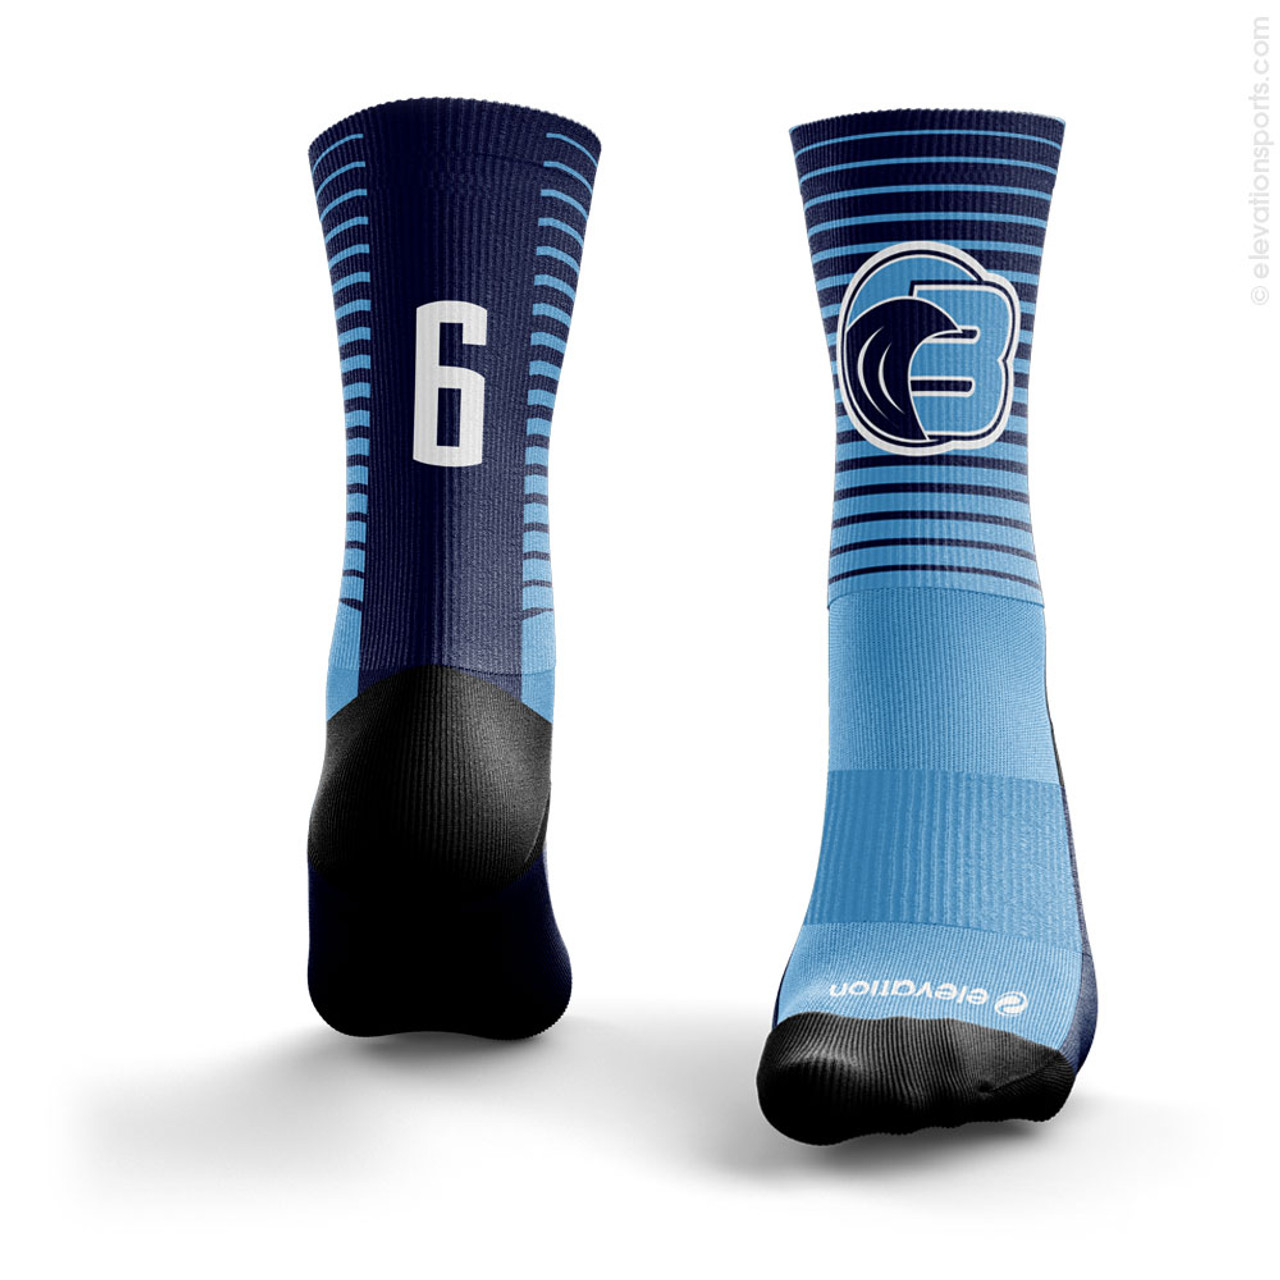 Elevation Sublimated Socks - Design SOX1004 | Elevation Sports